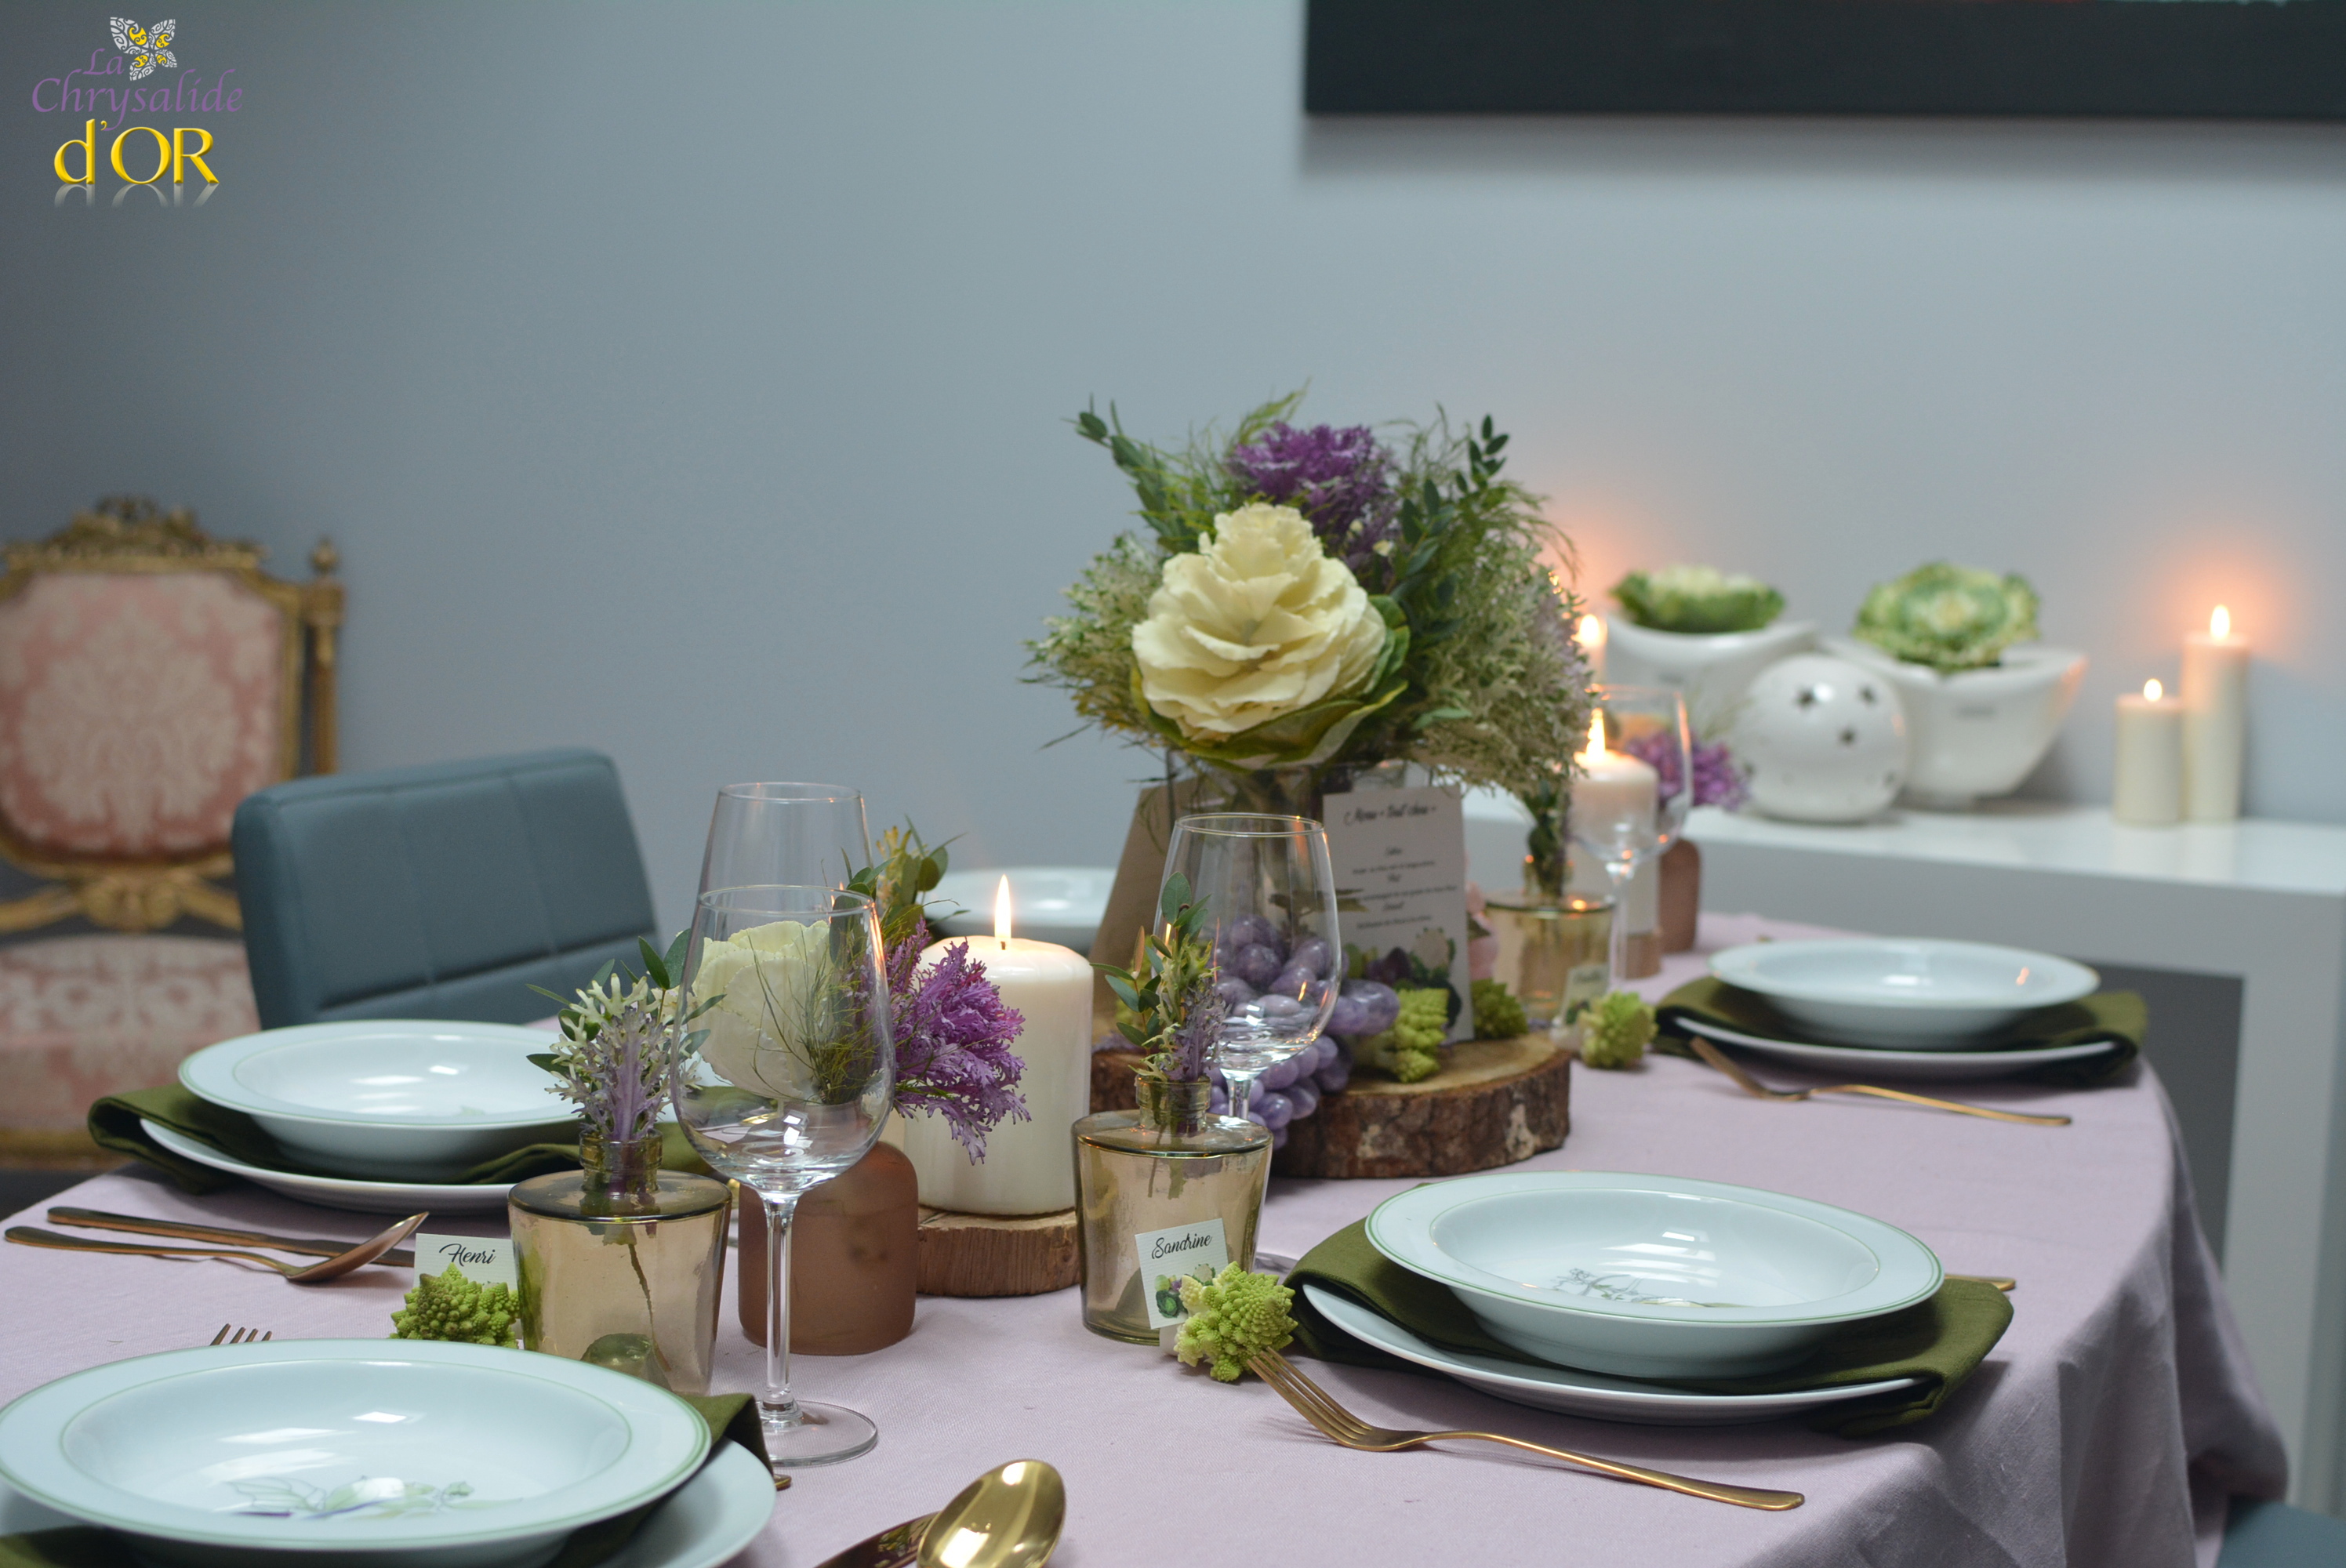 décoration table avec des fleurs de choux d'ornement